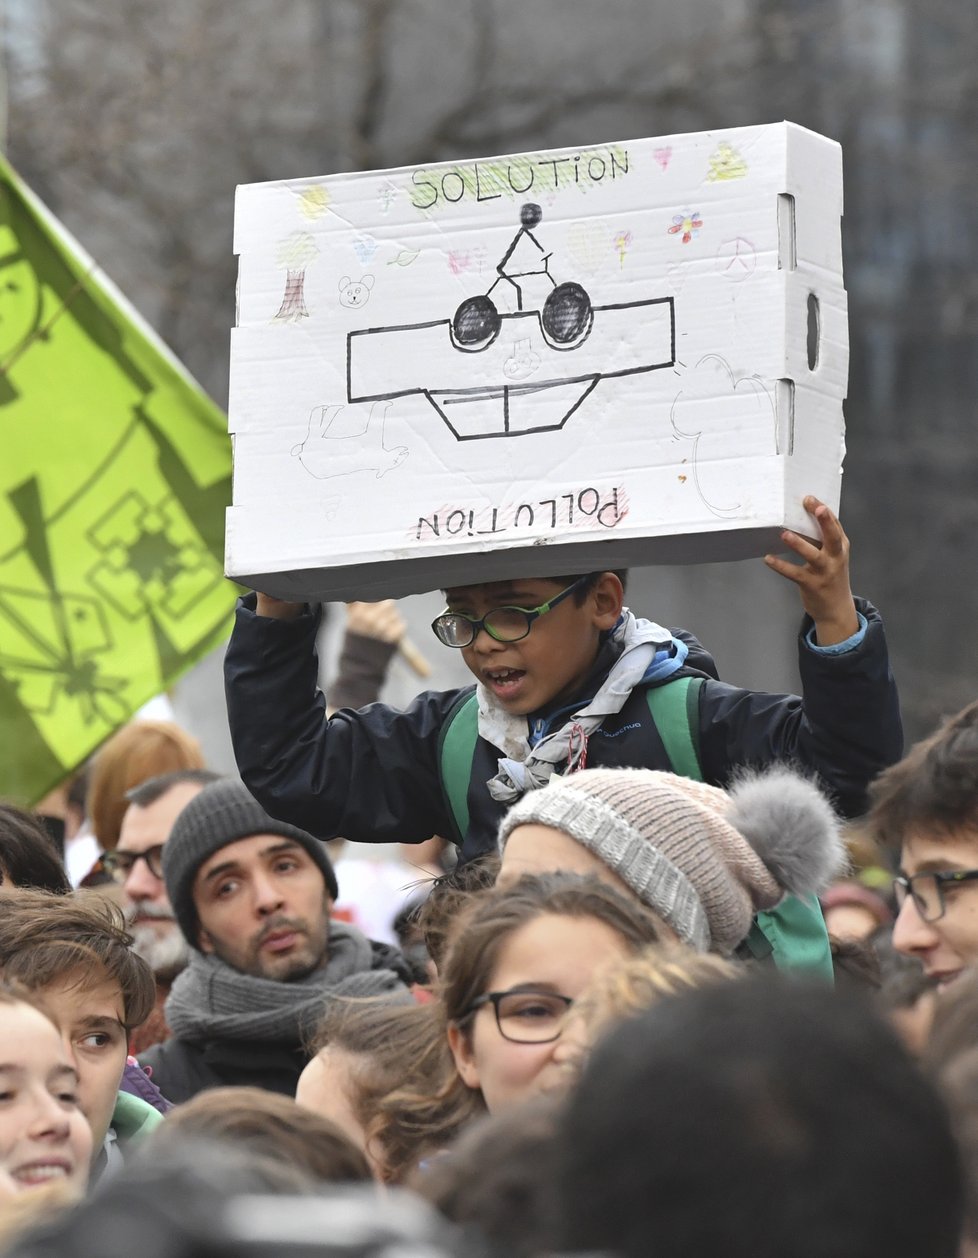 V Bruselu lidé demonstrovali za politická řešení klimatických změn